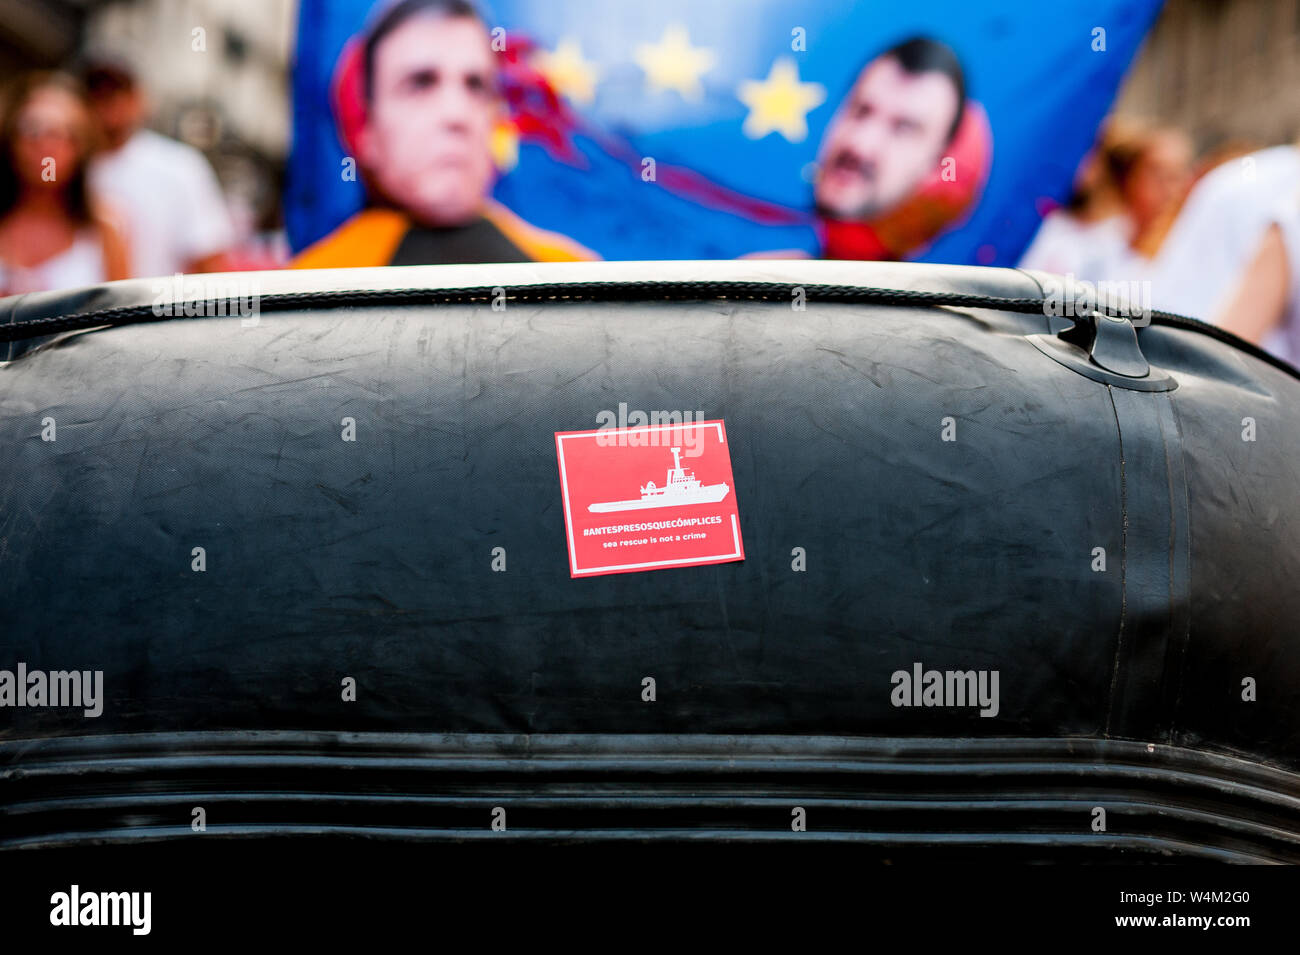 Proactiva bras ouverts sur le caoutchouc autocollant ong canot bateau lors de protestation publique contre l'extrême droite italienne contre la politique et les politiciens dans l'immigration Banque D'Images